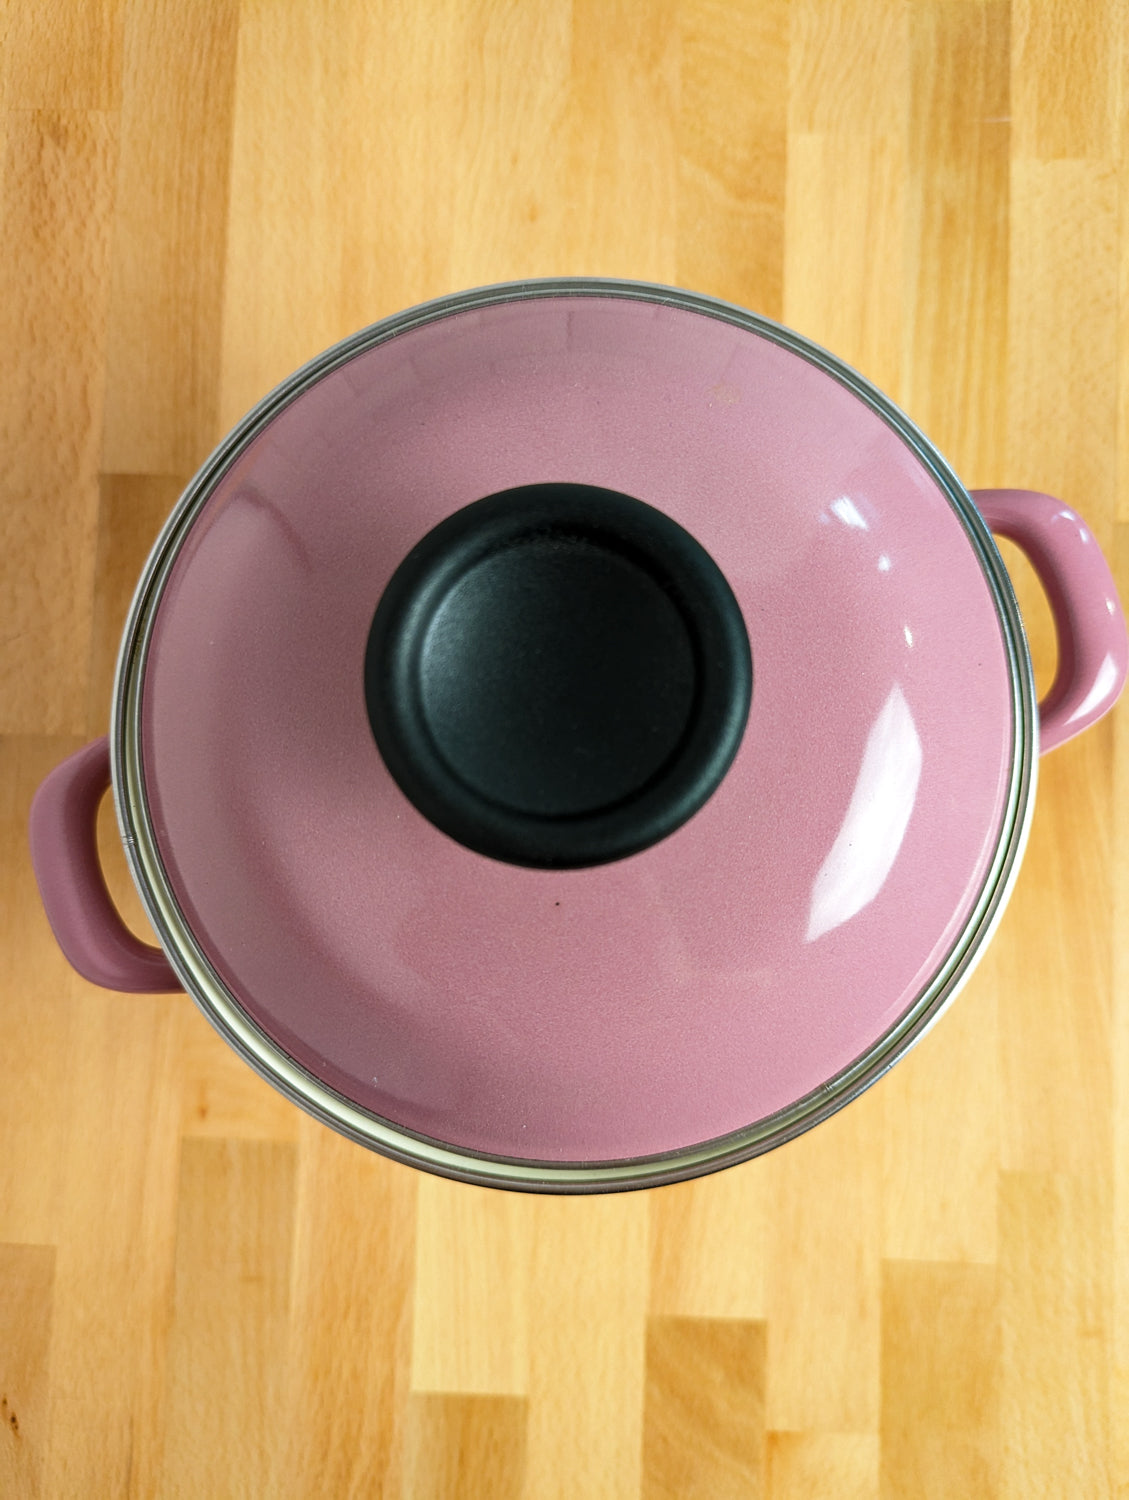 Chefs Atelier Enamel Steel Pot with Lid 2.9 qt. Pink Enamelware